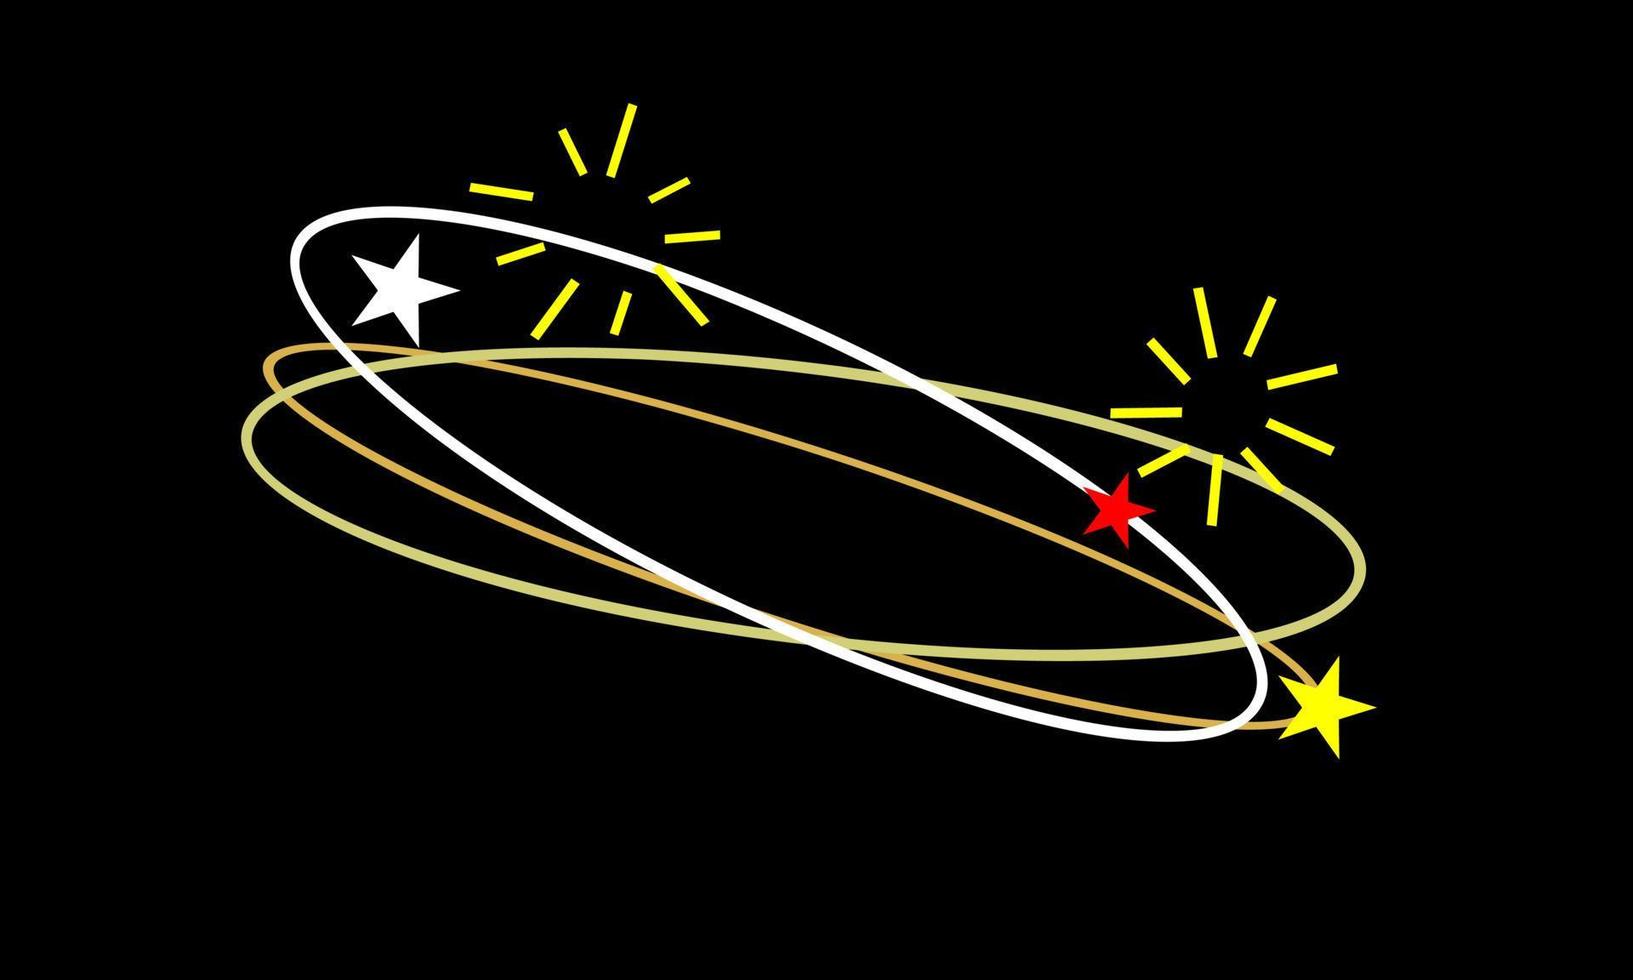 expresión mareada. estrellas voladoras con trazas de órbita de color blanco, rojo, amarillo sobre fondo negro. vector